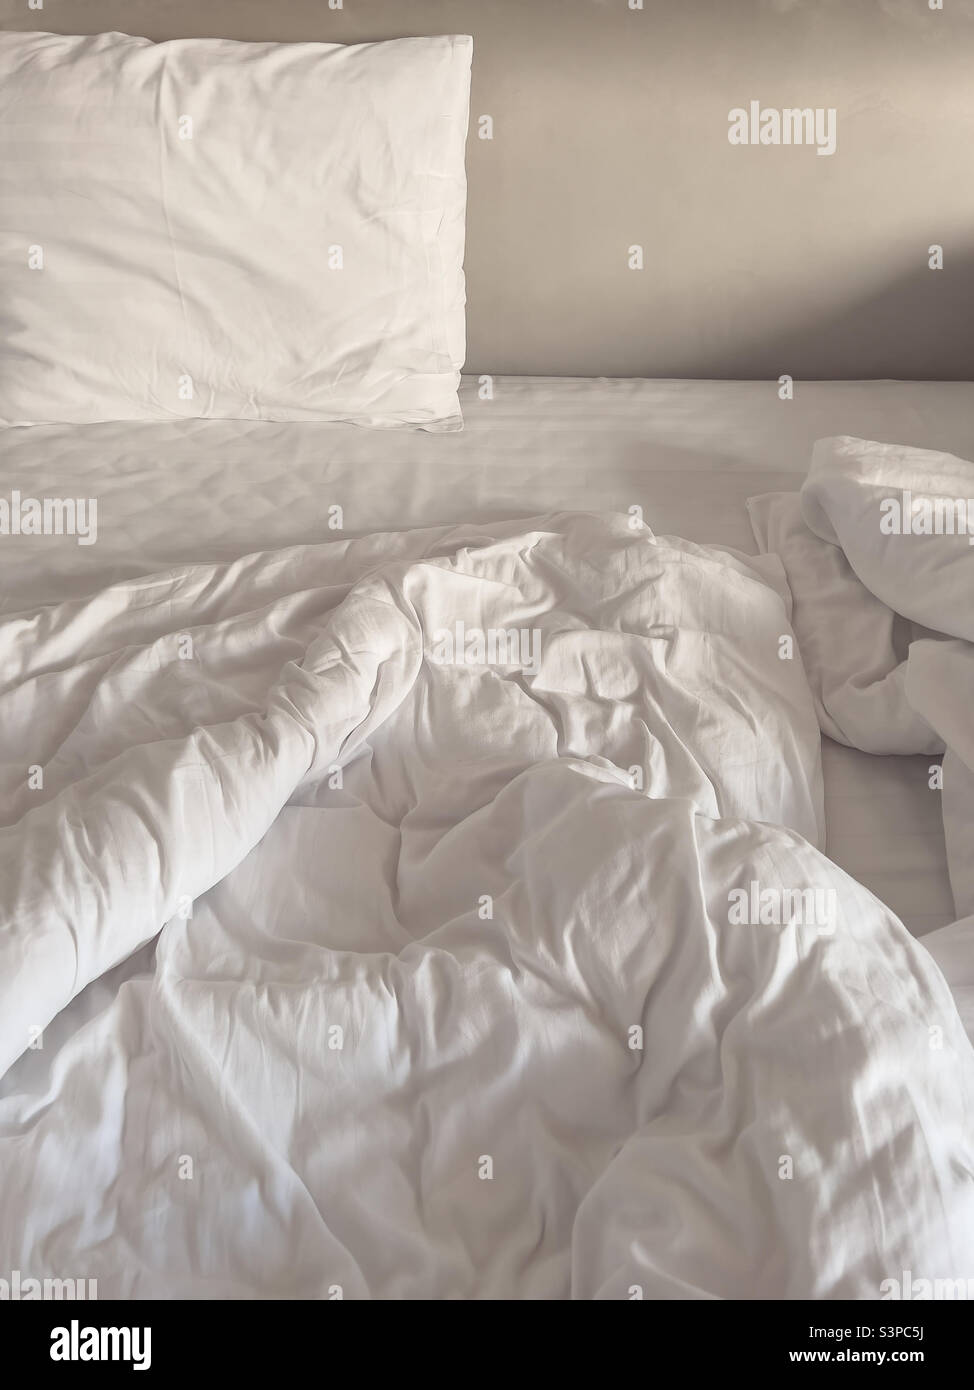 Bettdecke bedeckt ein weißes Kissen im Schlafzimmer Stockfoto